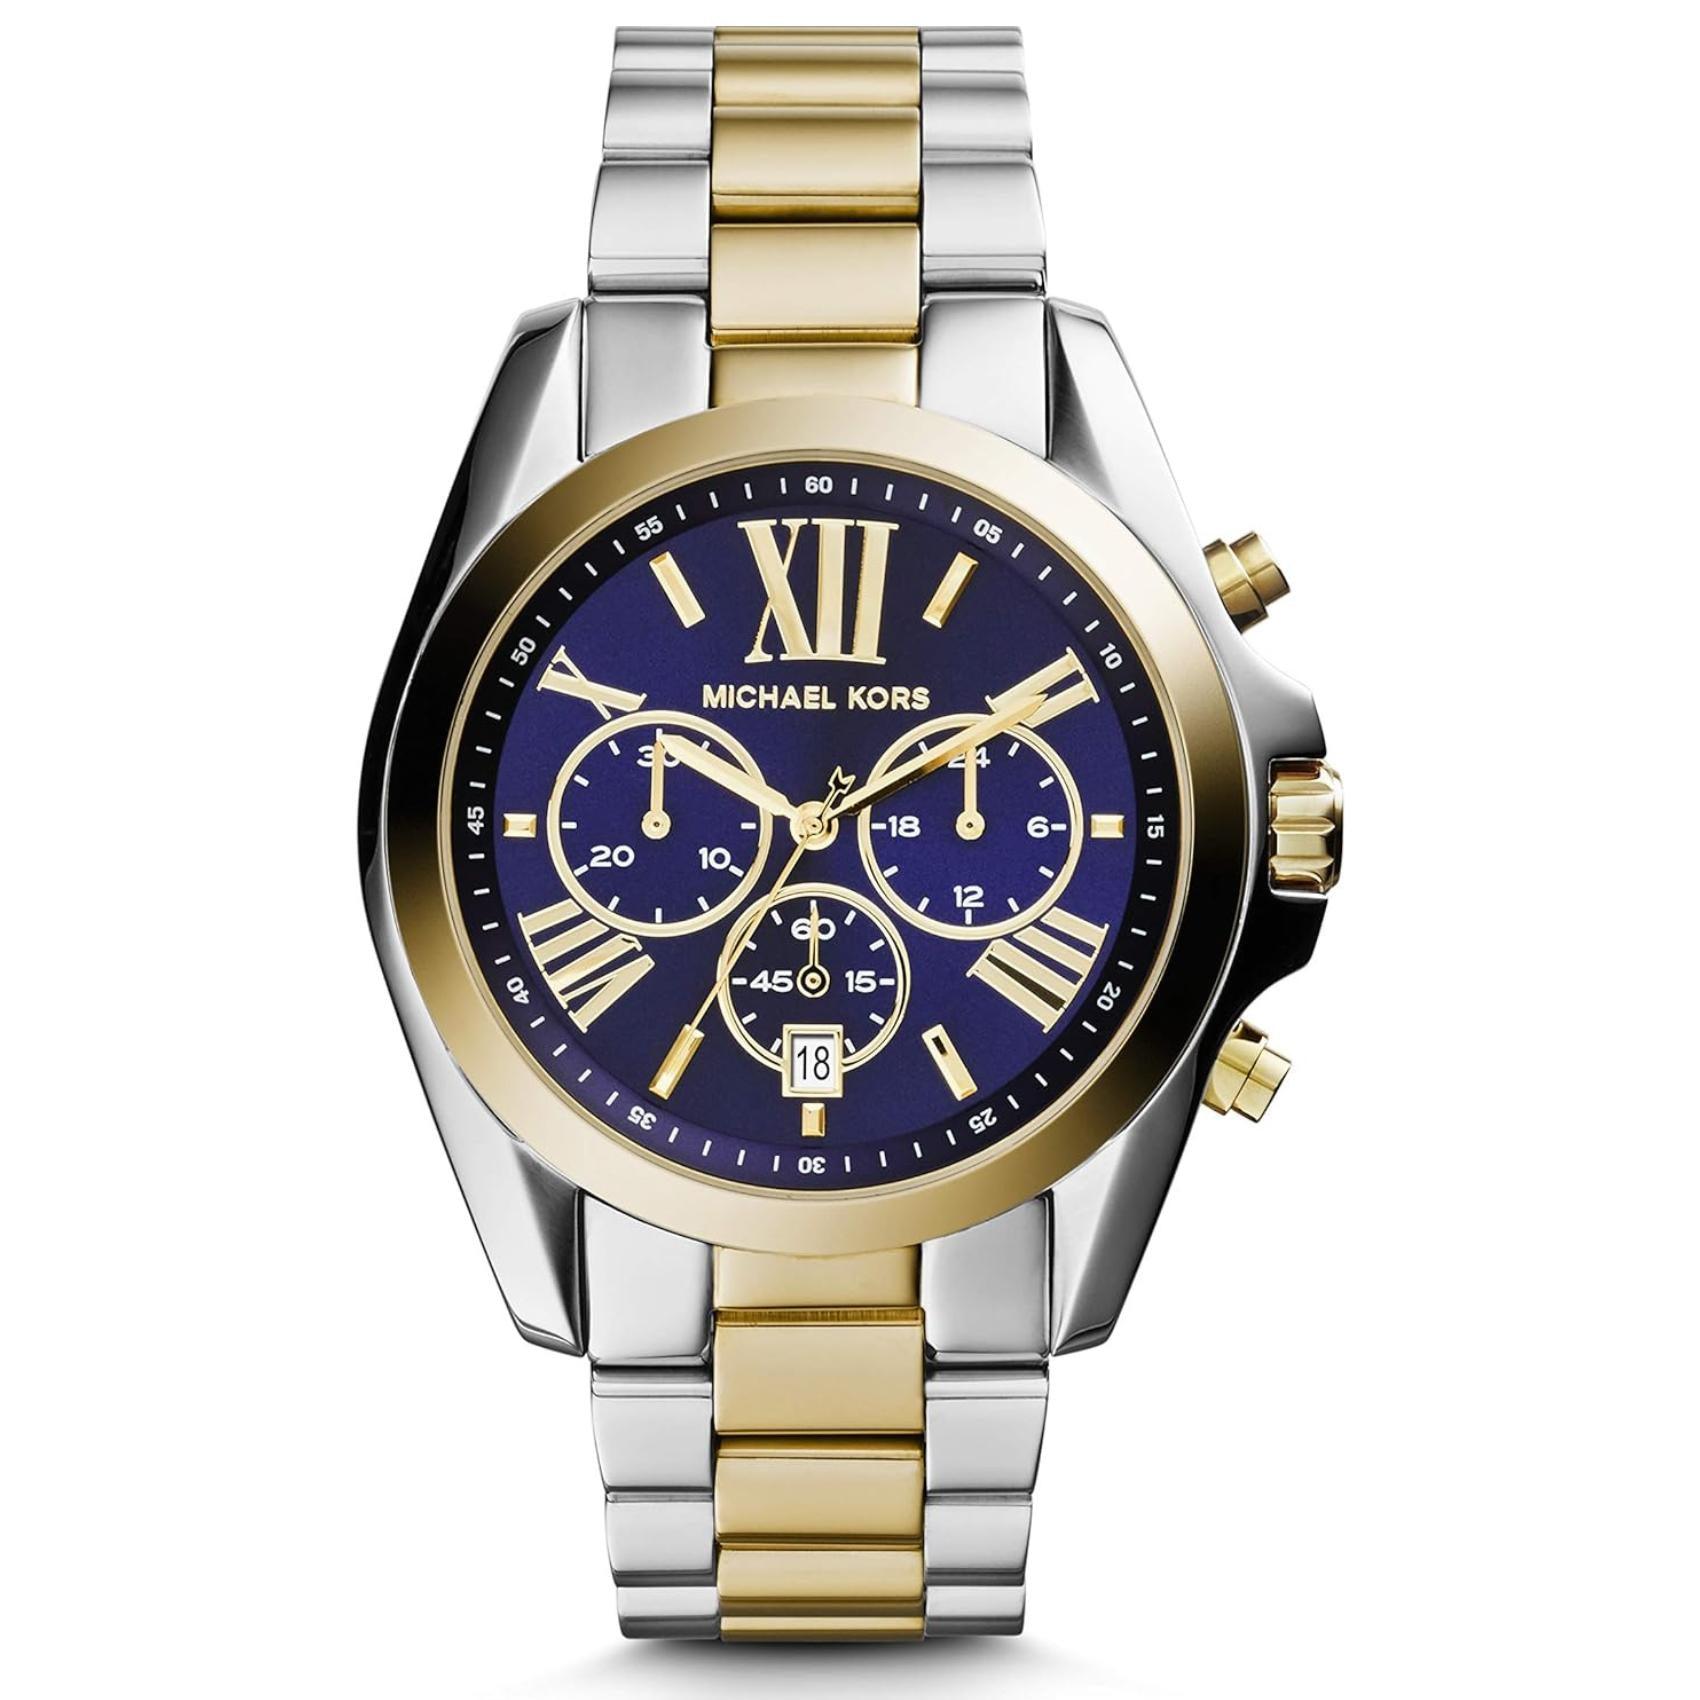 Γυναικείο ρολόι Michael Kors Bradshaw MK5976 χρονογράφος με δίχρωμο ατσάλινο μπρασελέ σε χρυσό-ασημί χρώμα, στρογγυλό μπλε καντράν με ημερομηνία και στεφάνι 42mm.